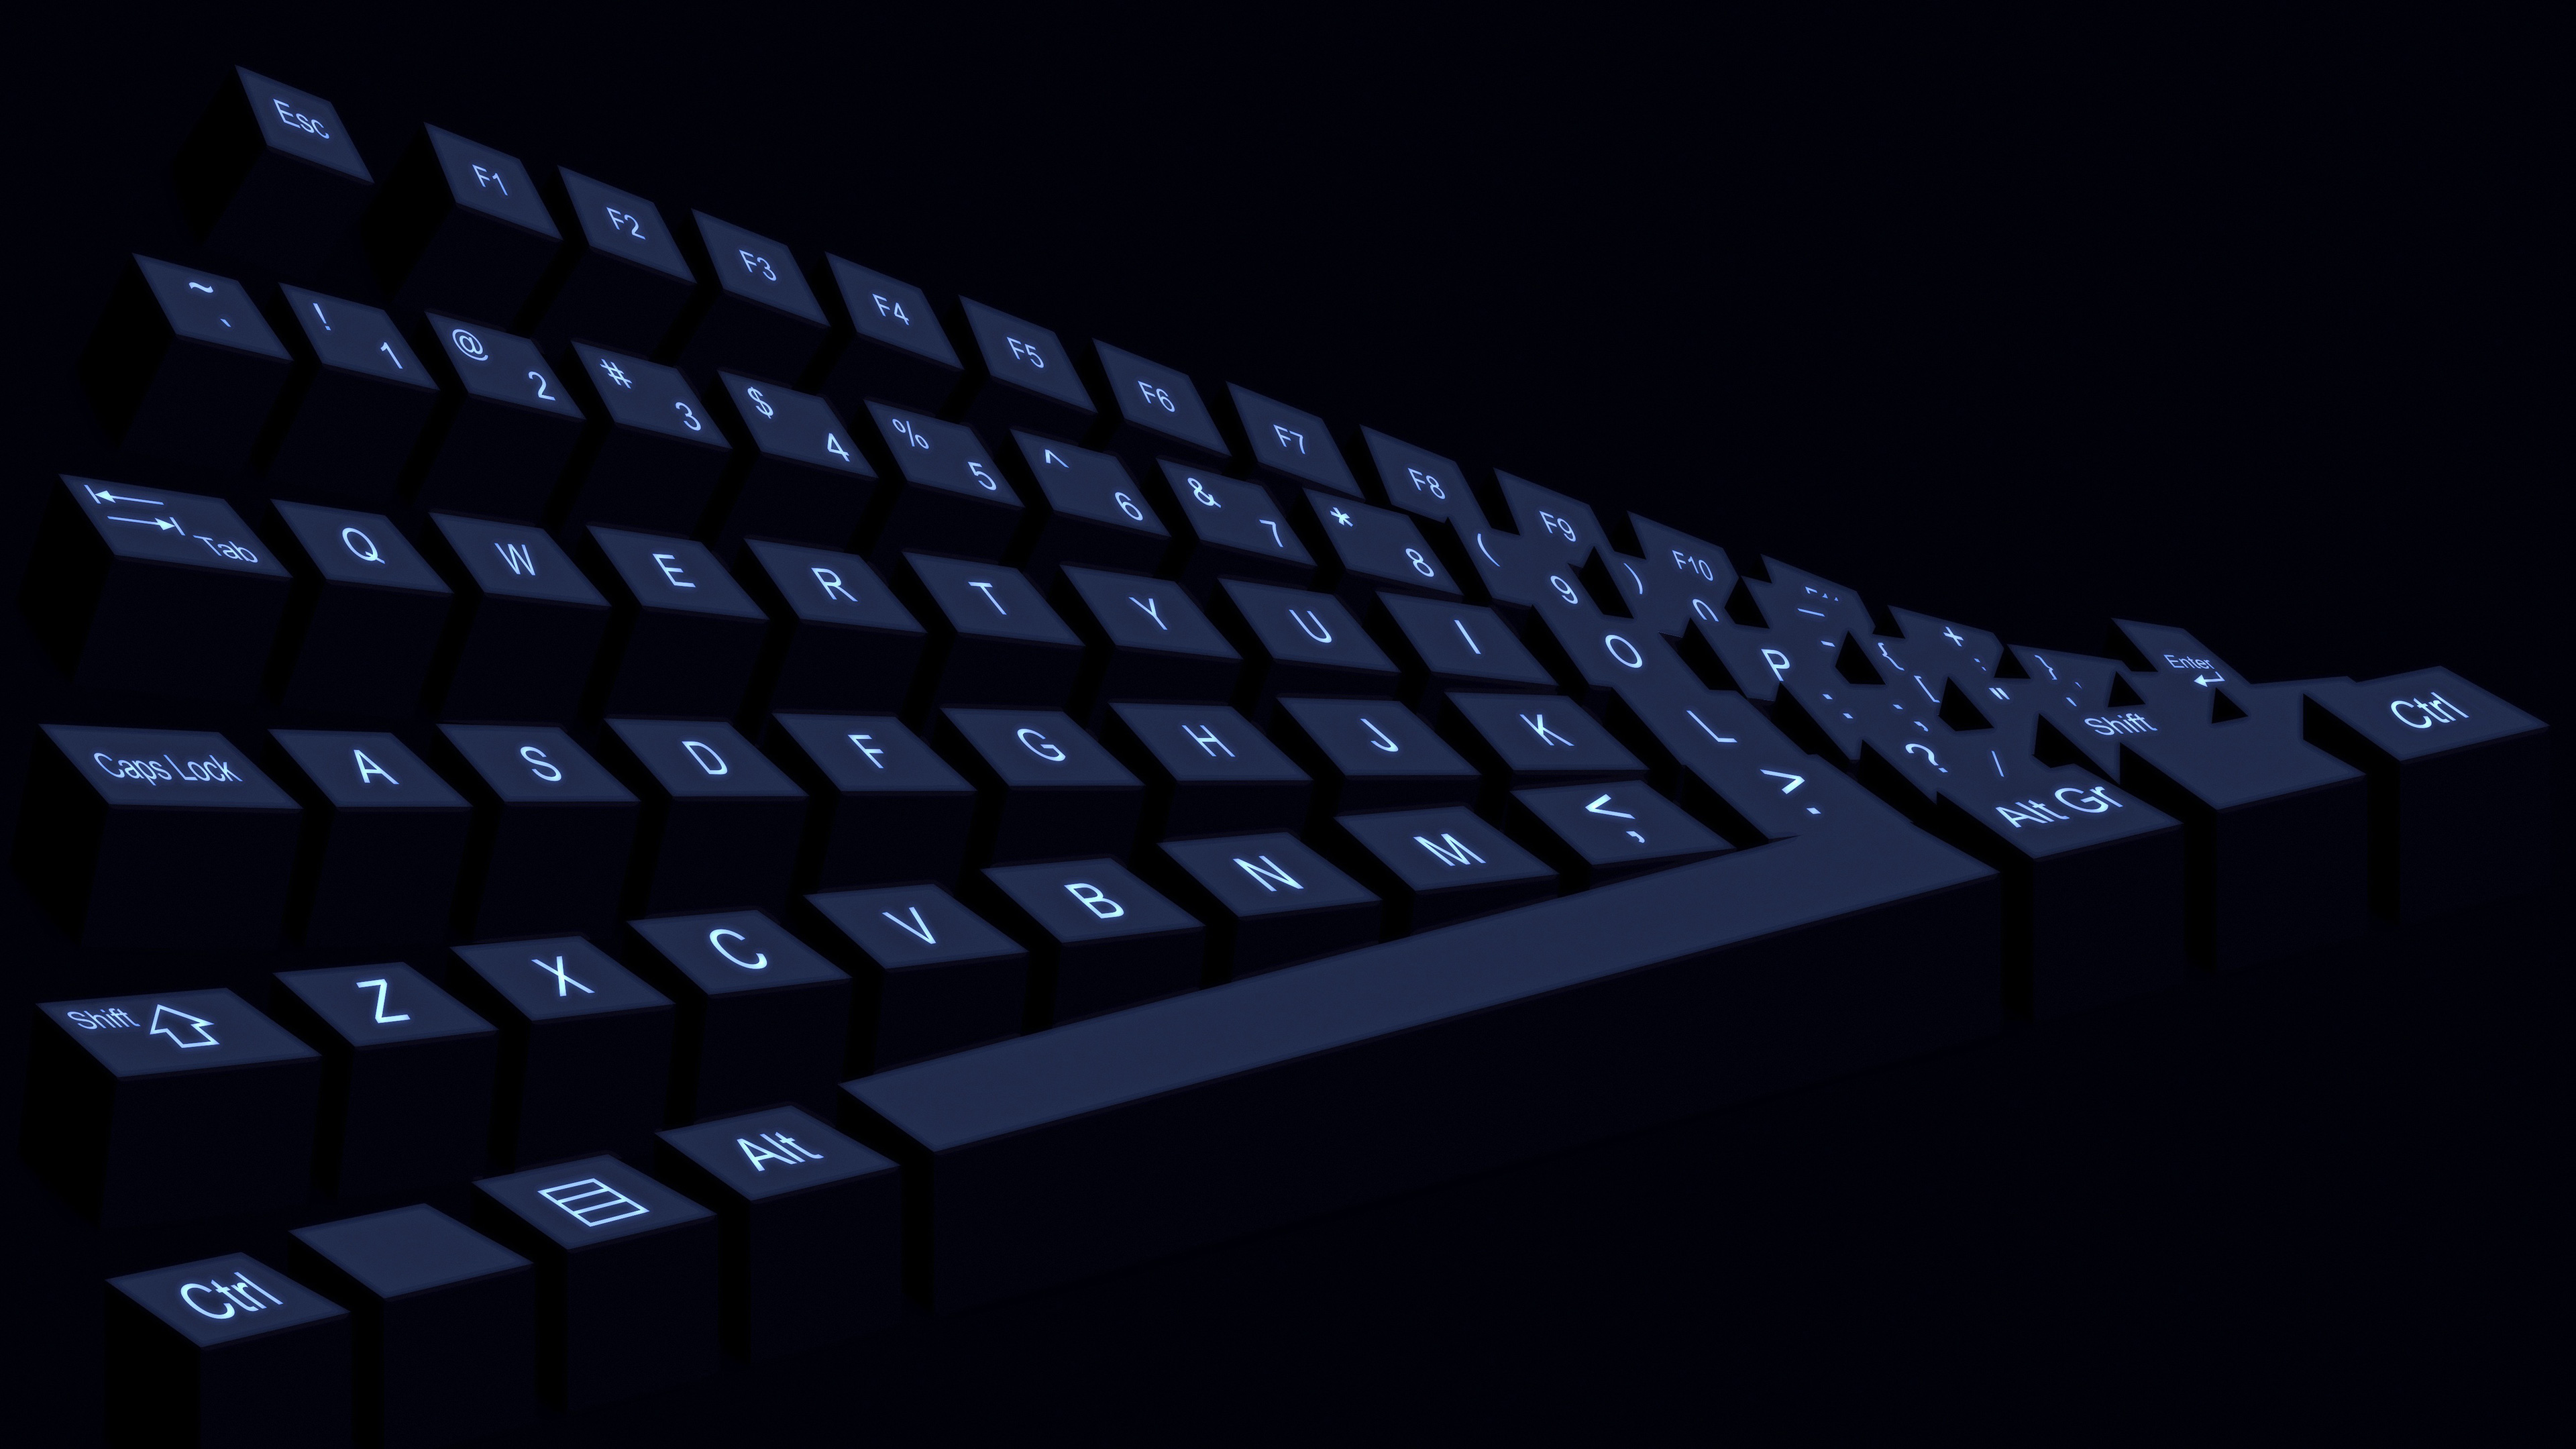 Wallpapers hi-tech black keyboard on the desktop